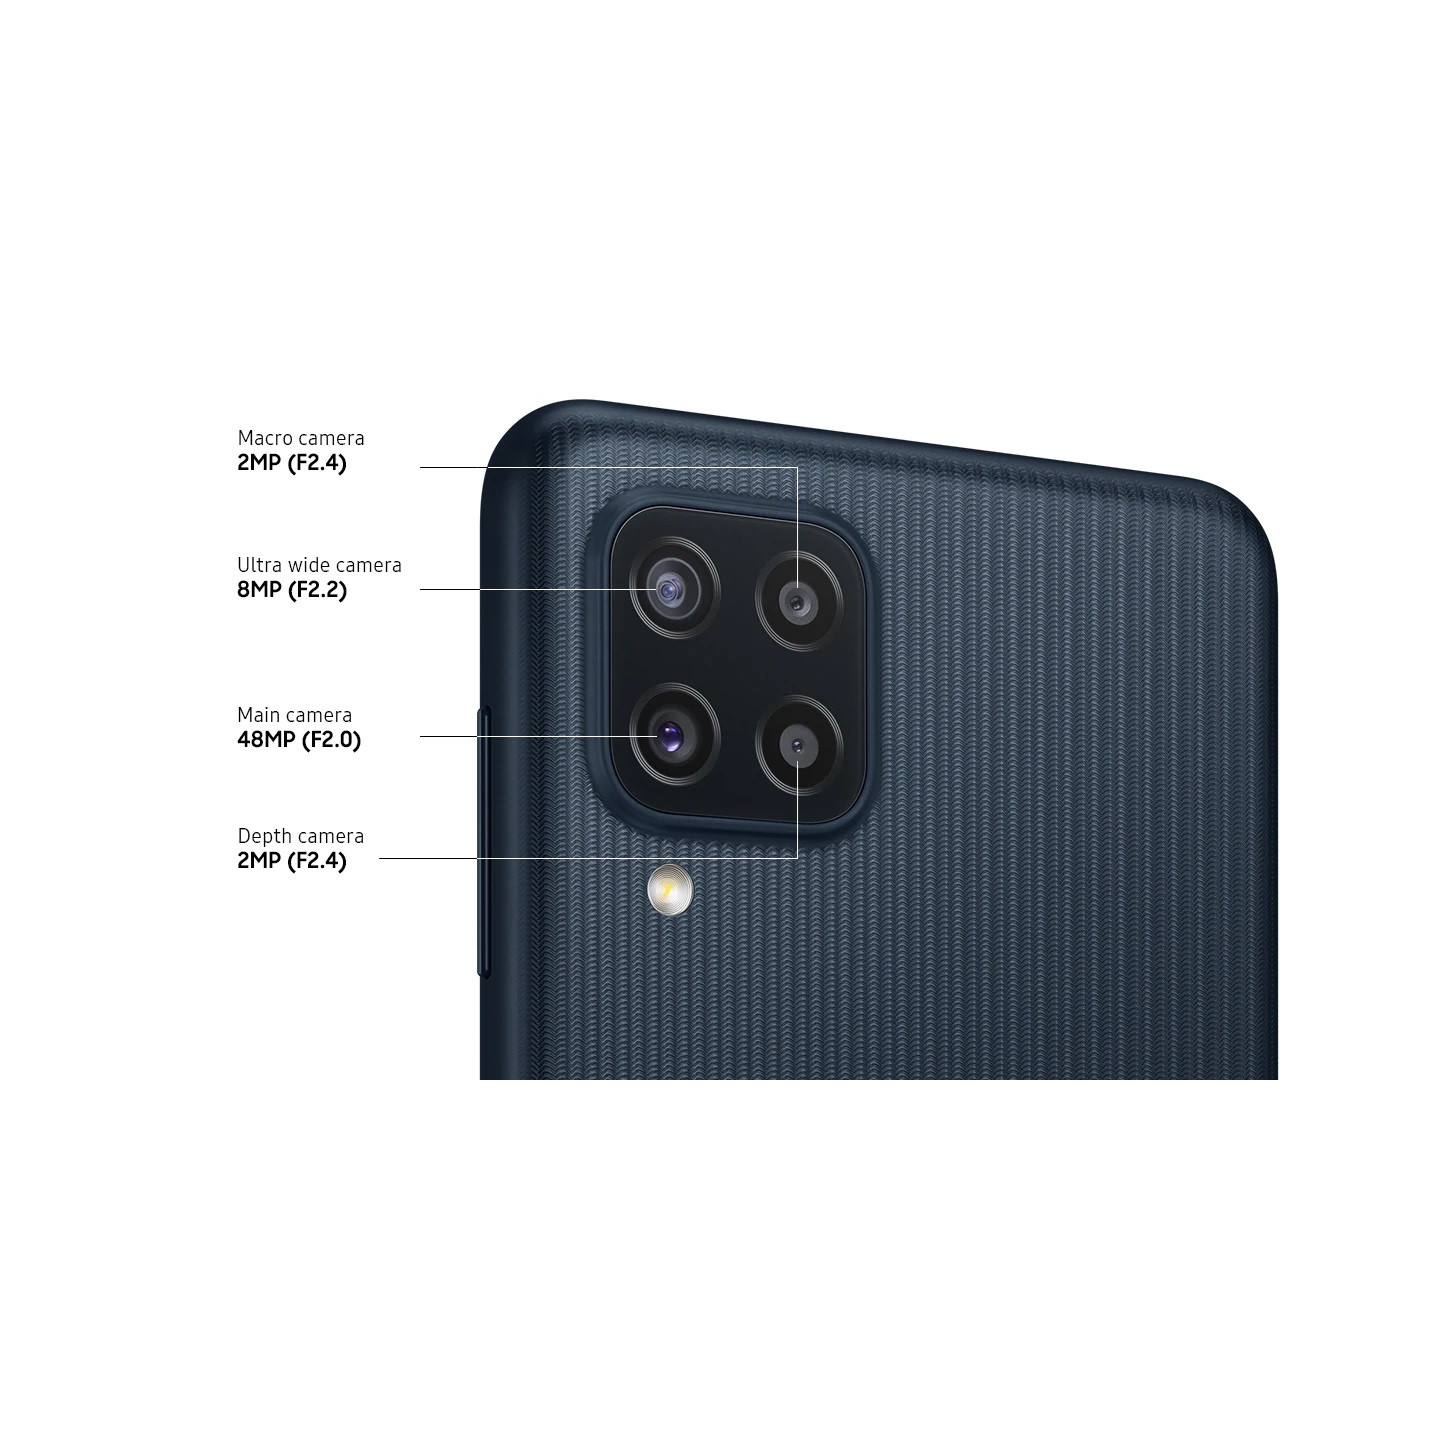 گوشی موبایل سامسونگ مدل Galaxy M22 ظرفیت 128 گیگابایت با 6 گیگابایت رم